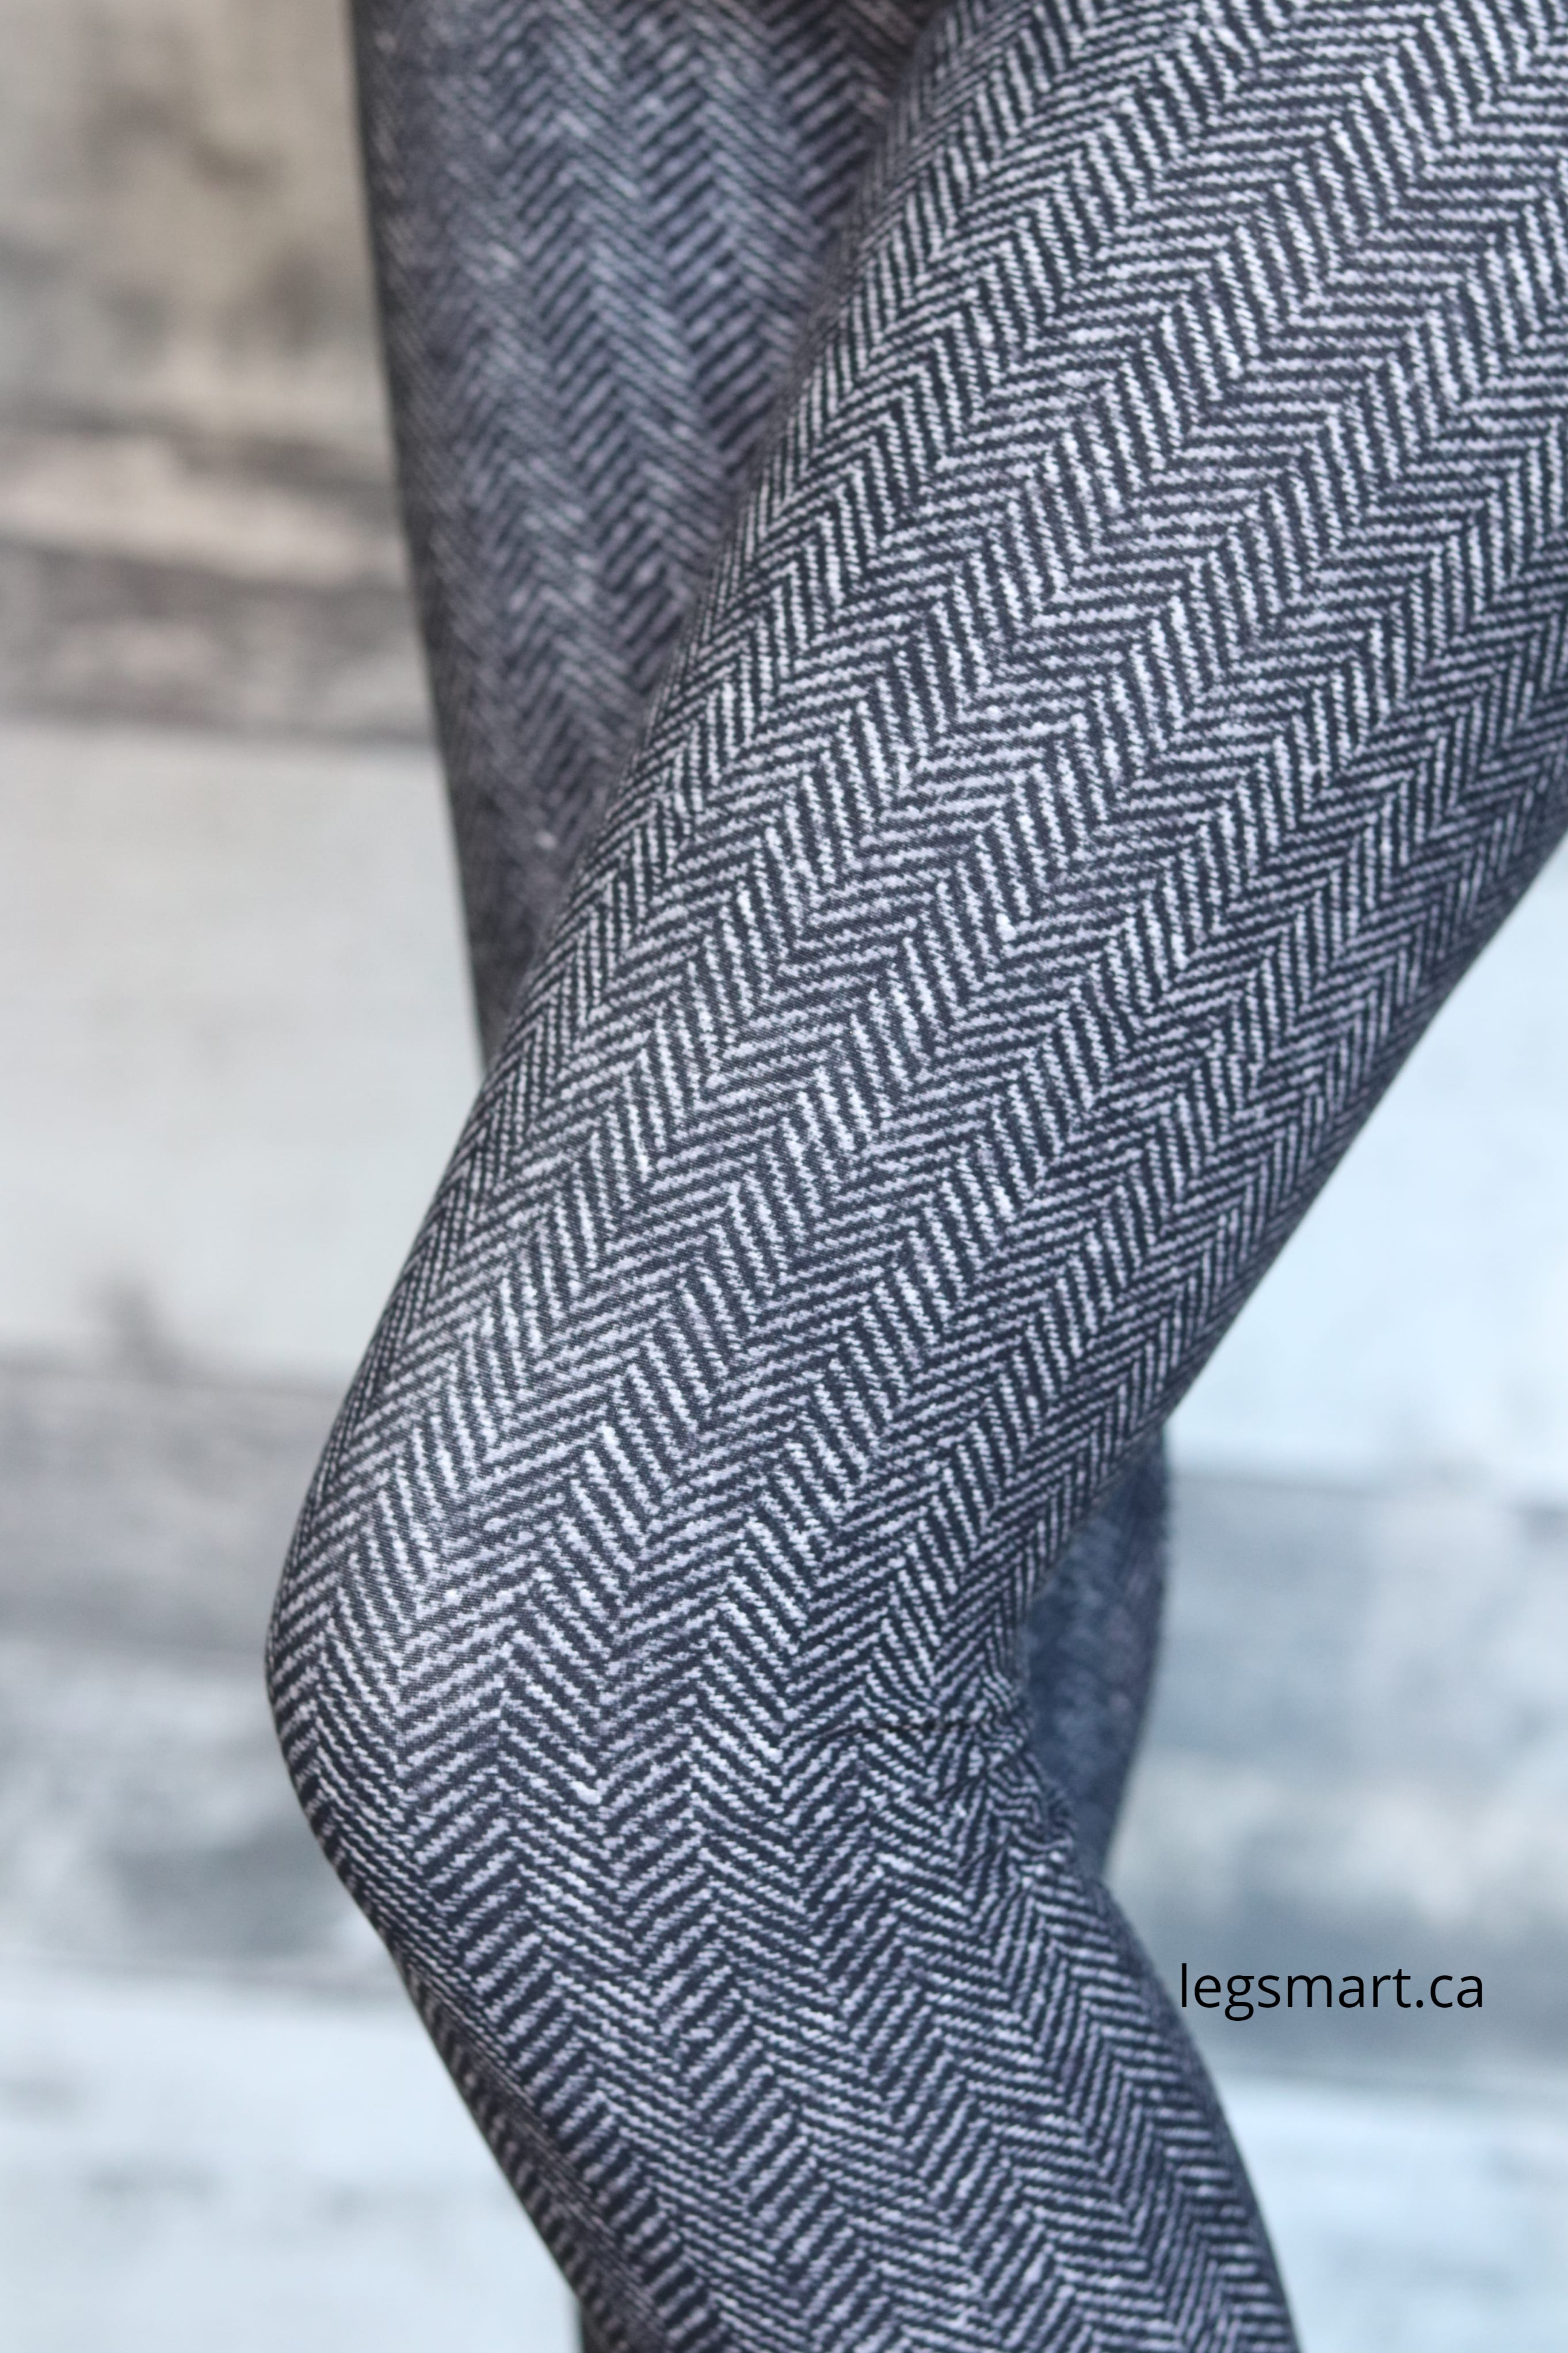 Tweed Leggings – Leg Smart